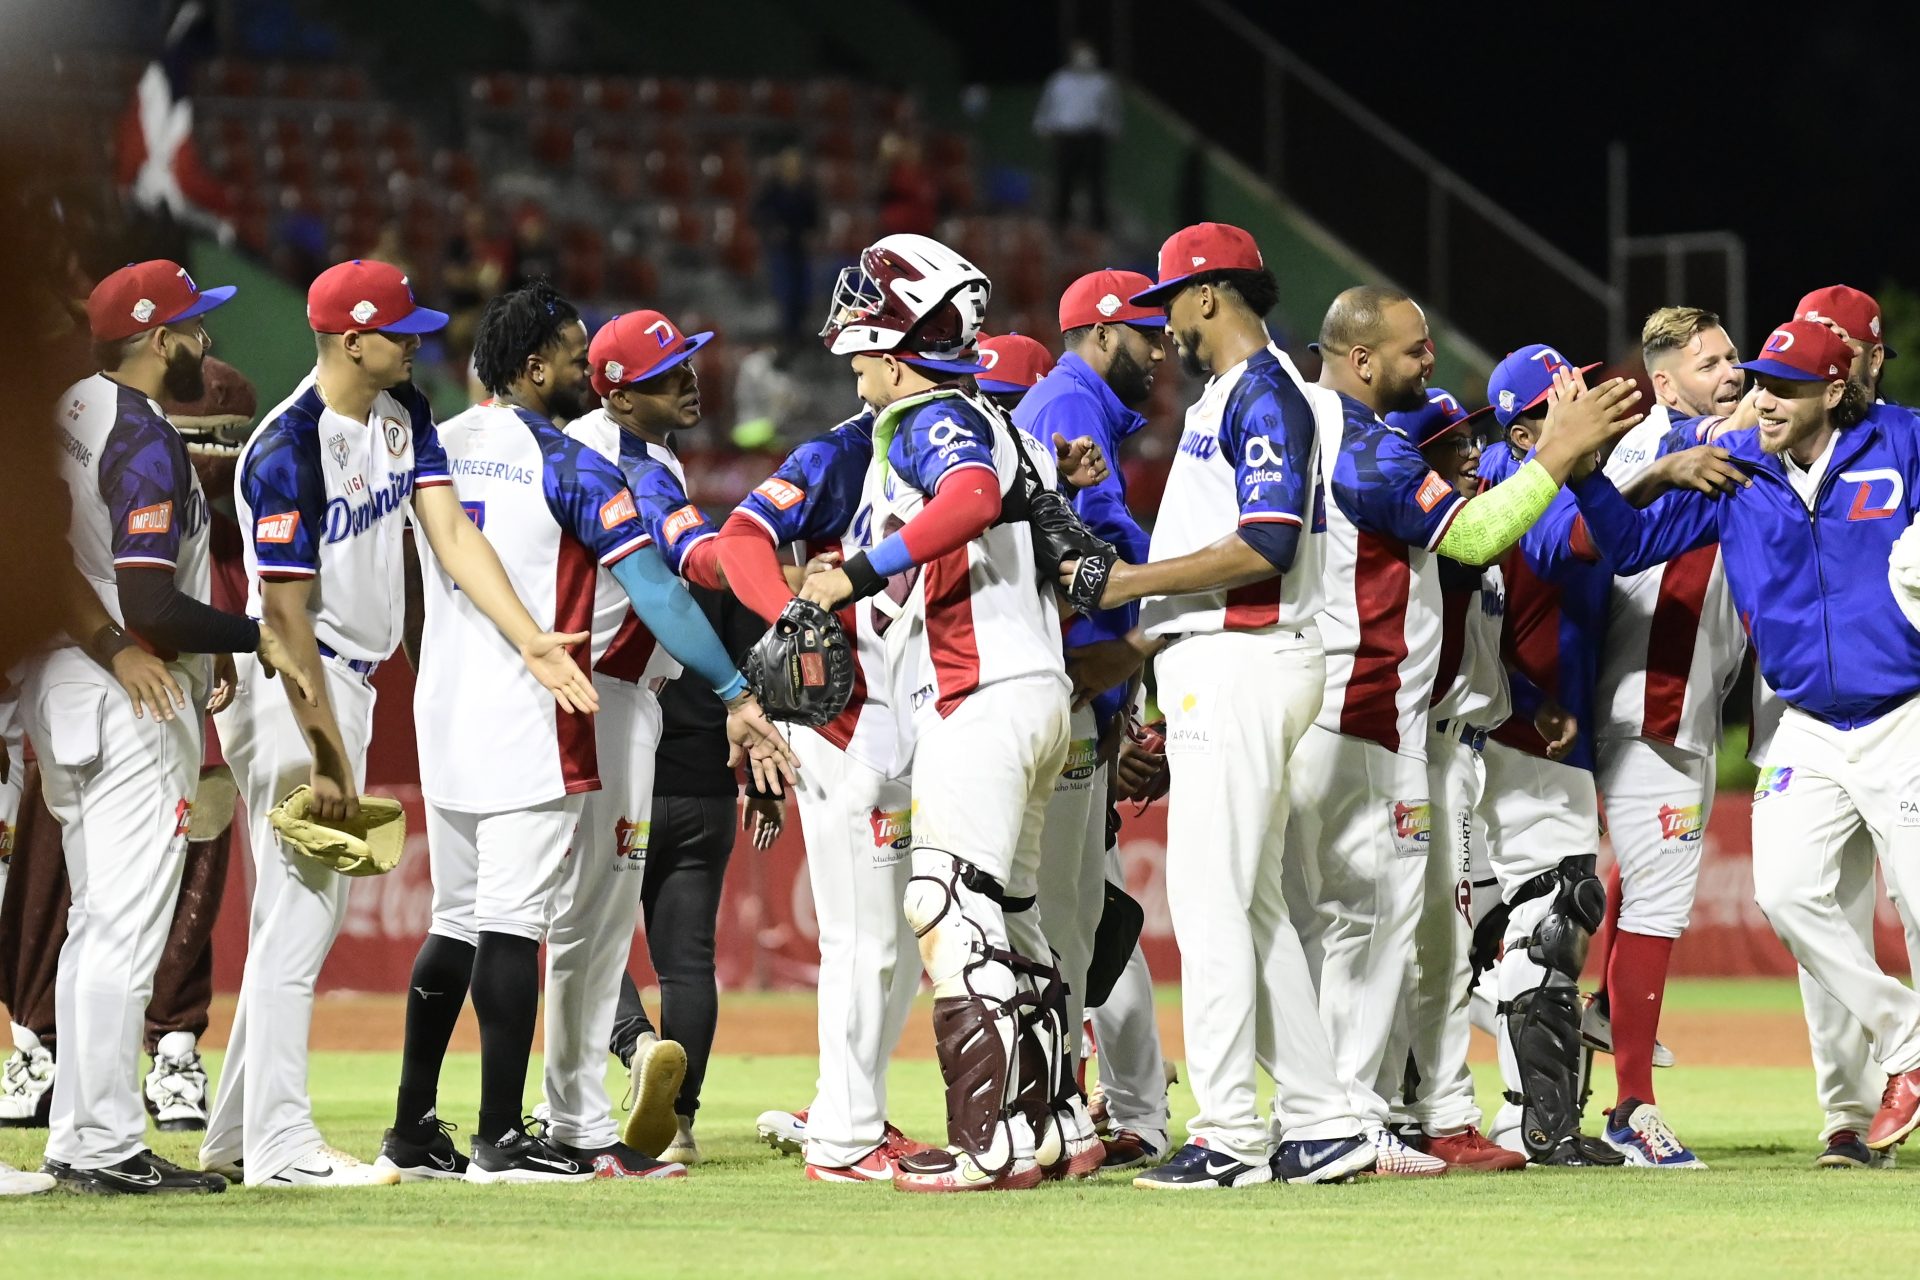 República Dominicana a la final de la Serie del Caribe REPÚBLICA